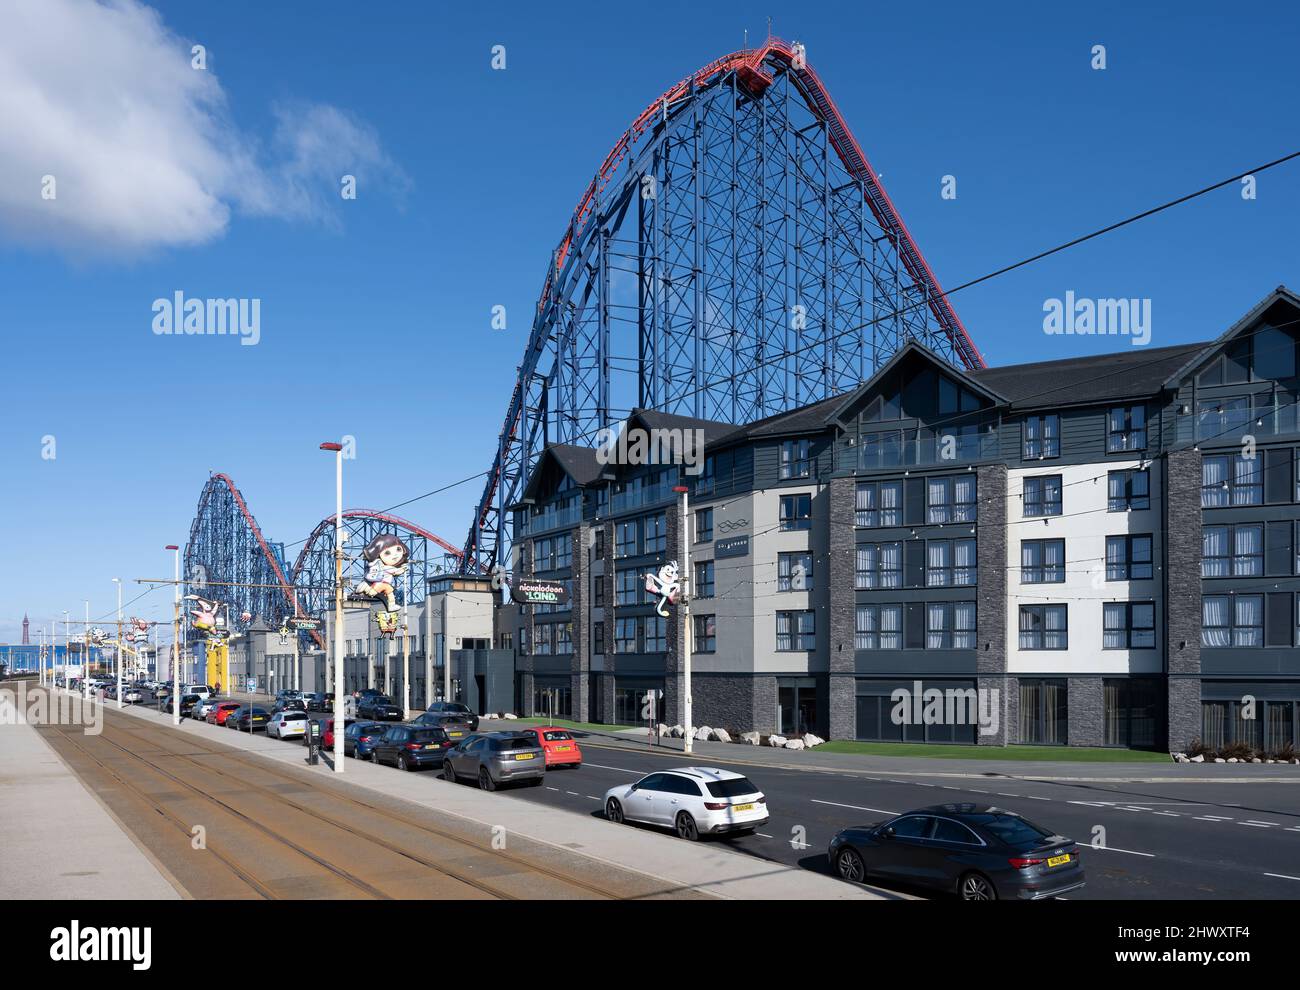 L'hôtel Boulevarde de Blackpool est situé juste en face du célèbre Big One Rollercoaster sur la Promenade de Blackpool, Lancashire, Royaume-Uni Banque D'Images